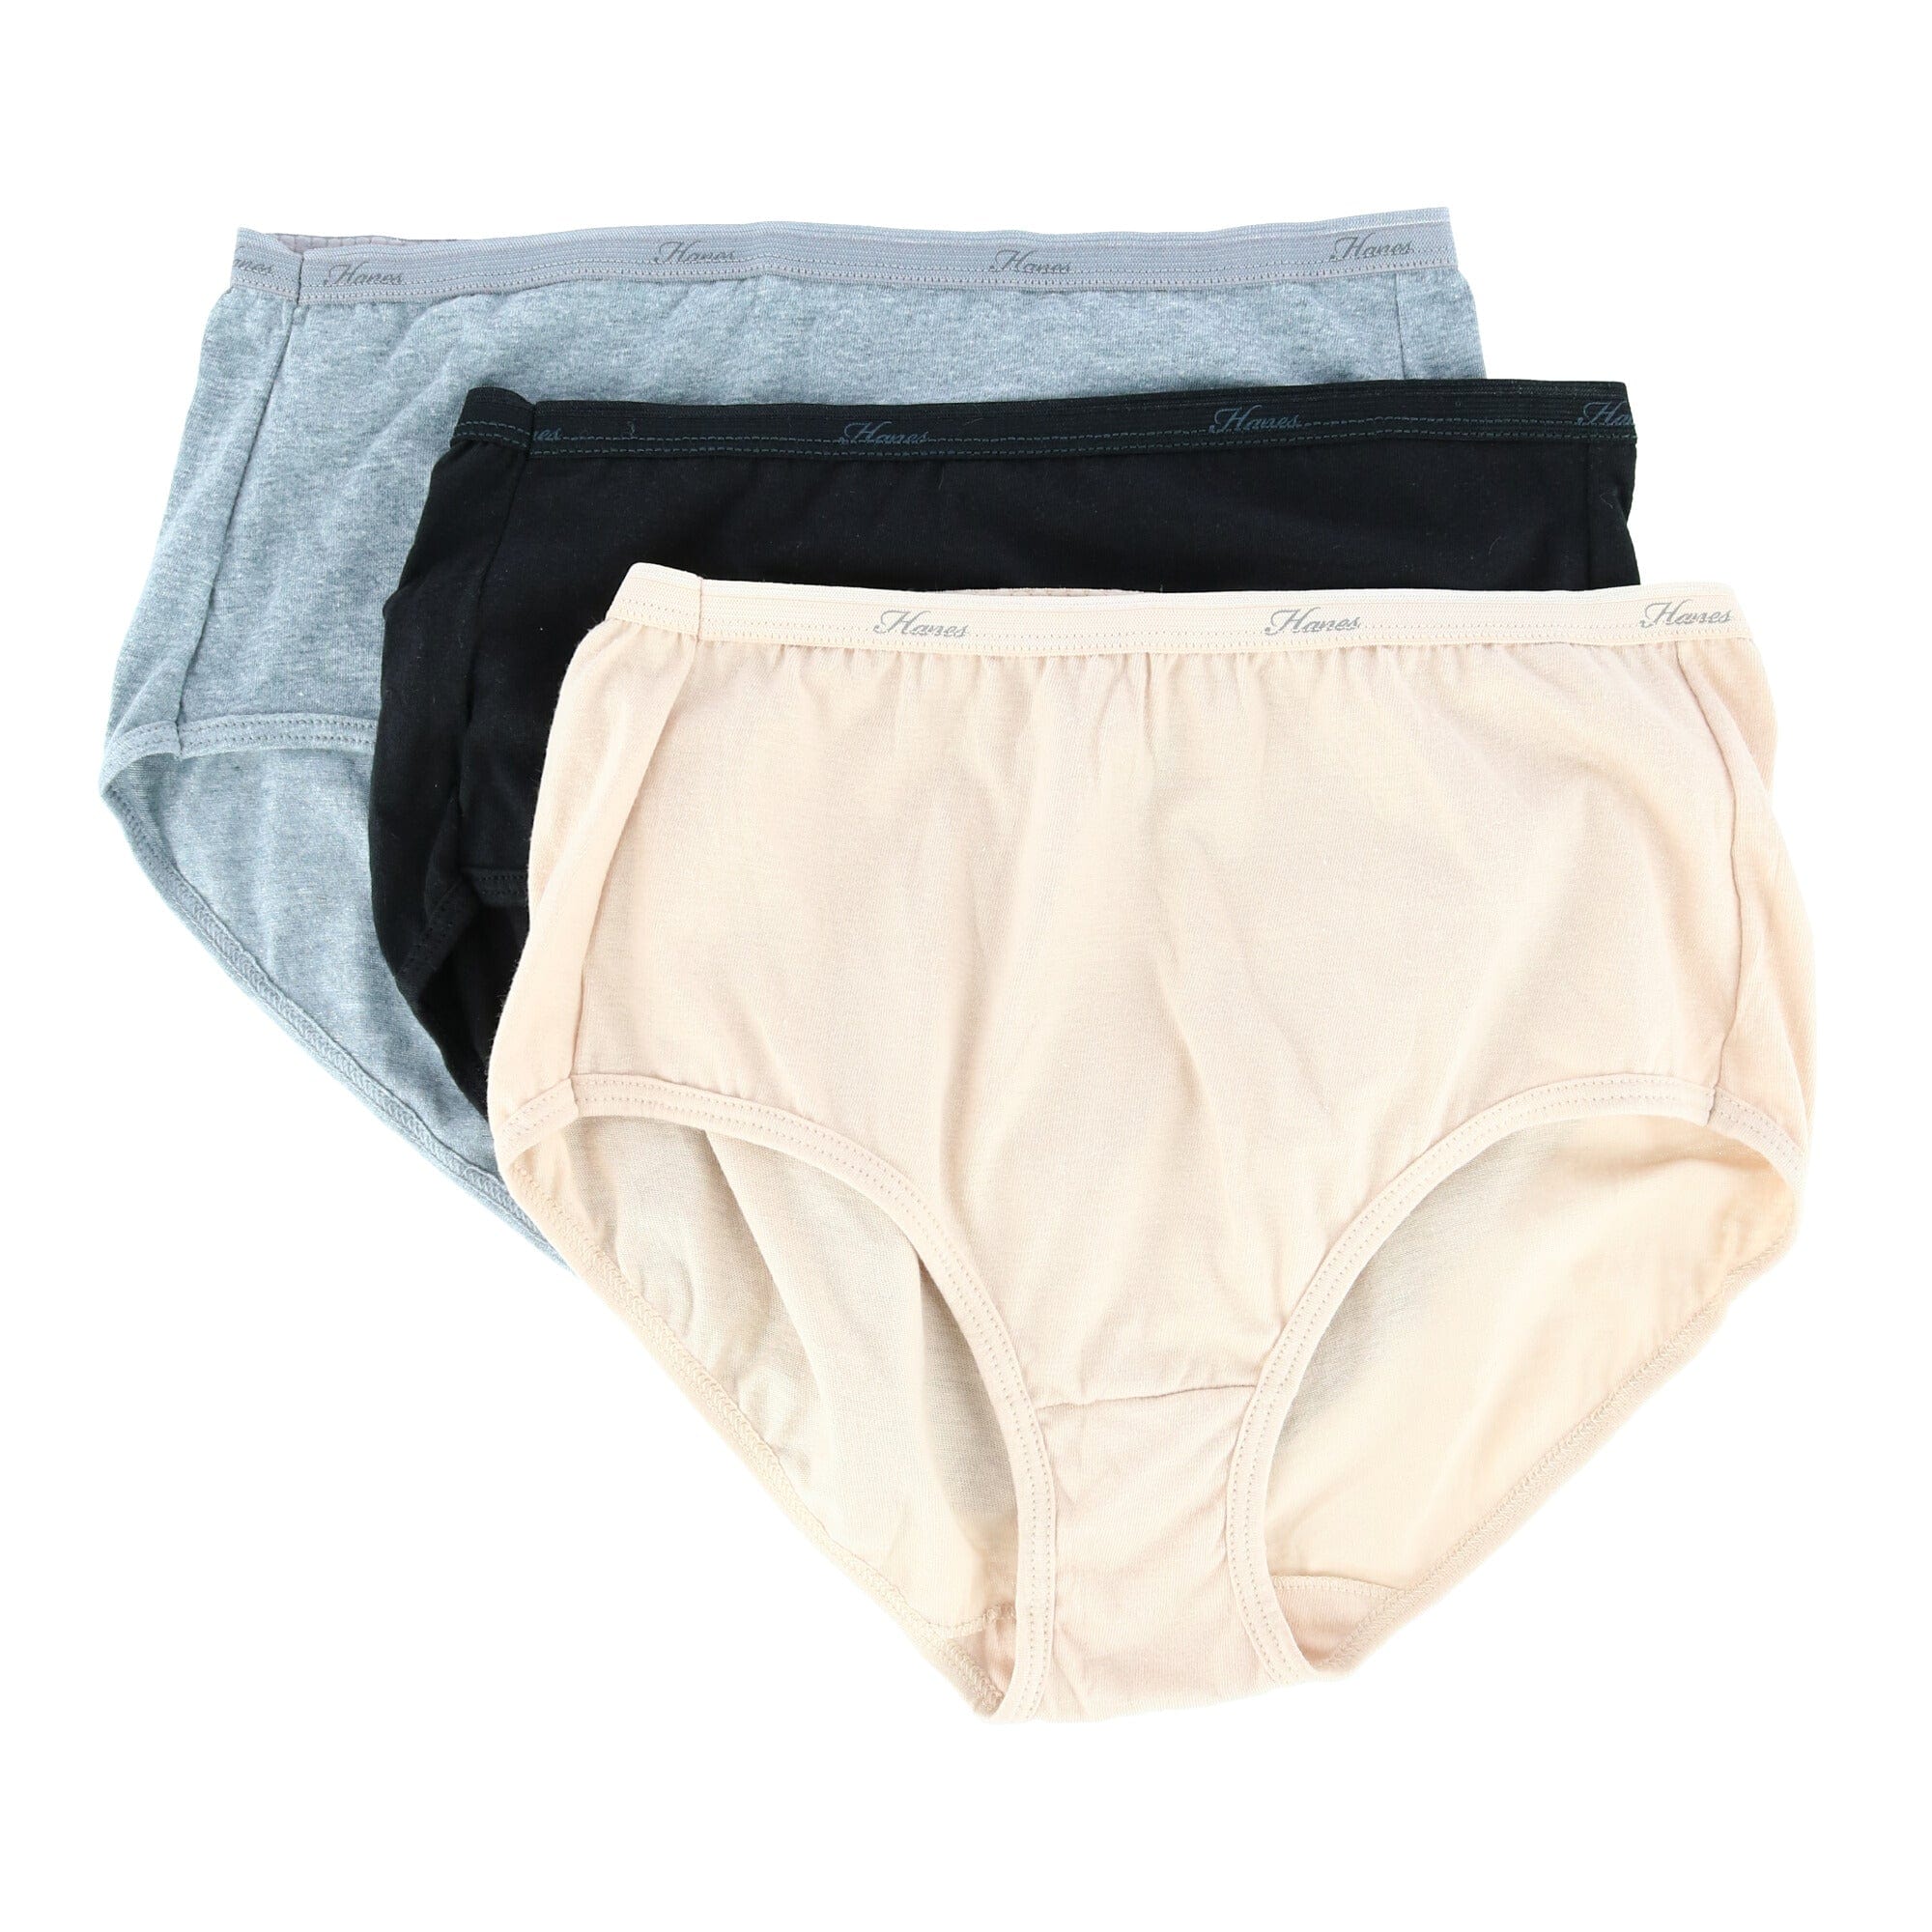 Hanes Cool Dri Cotton Women's Hipster Underwear, 3 pk. - Size 8